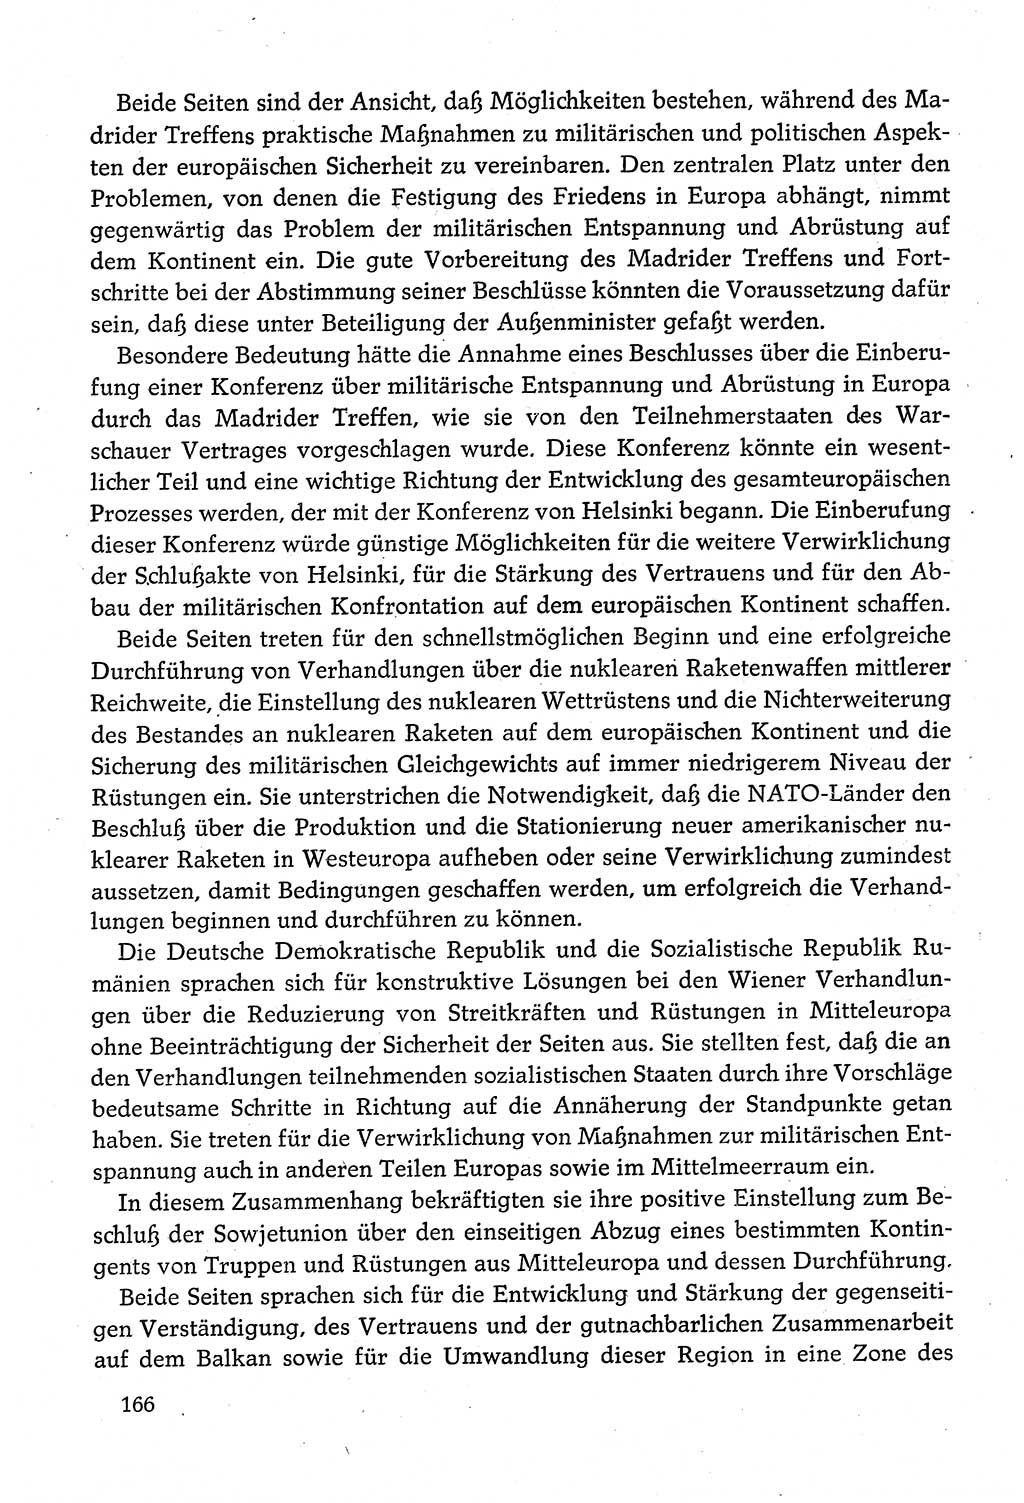 Dokumente der Sozialistischen Einheitspartei Deutschlands (SED) [Deutsche Demokratische Republik (DDR)] 1980-1981, Seite 166 (Dok. SED DDR 1980-1981, S. 166)